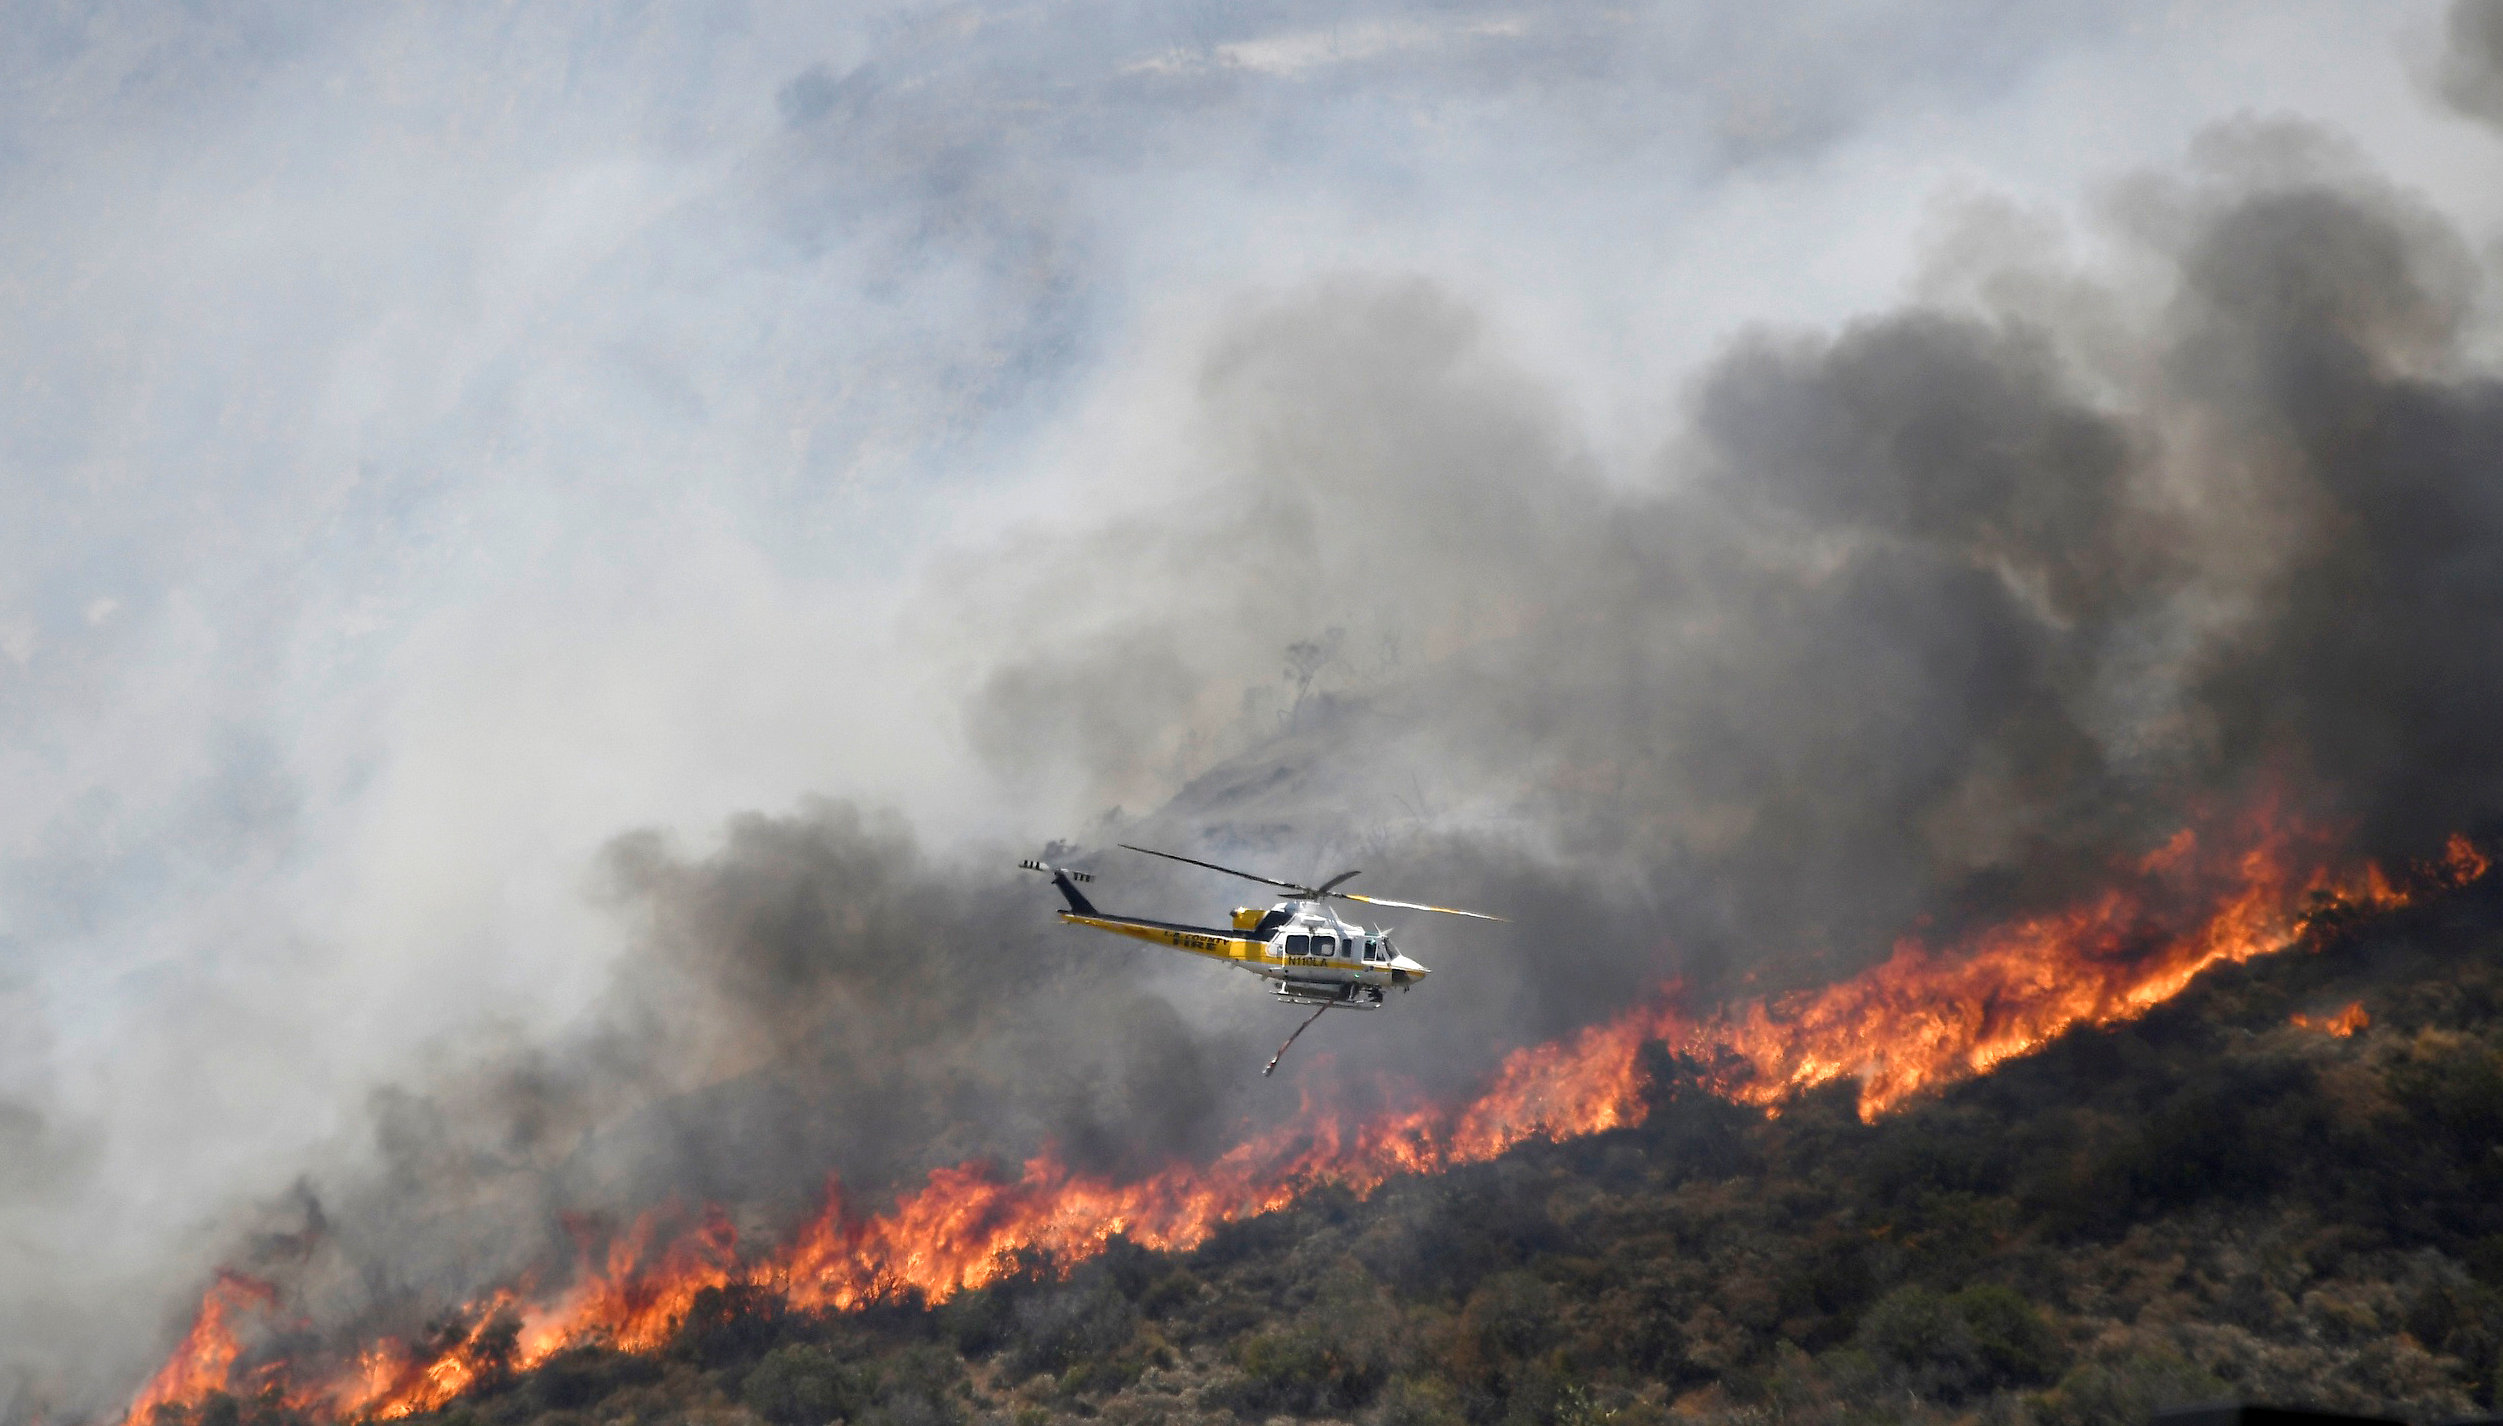 EUU Más de 200 mil evacuados por incendio en California (VIDEO